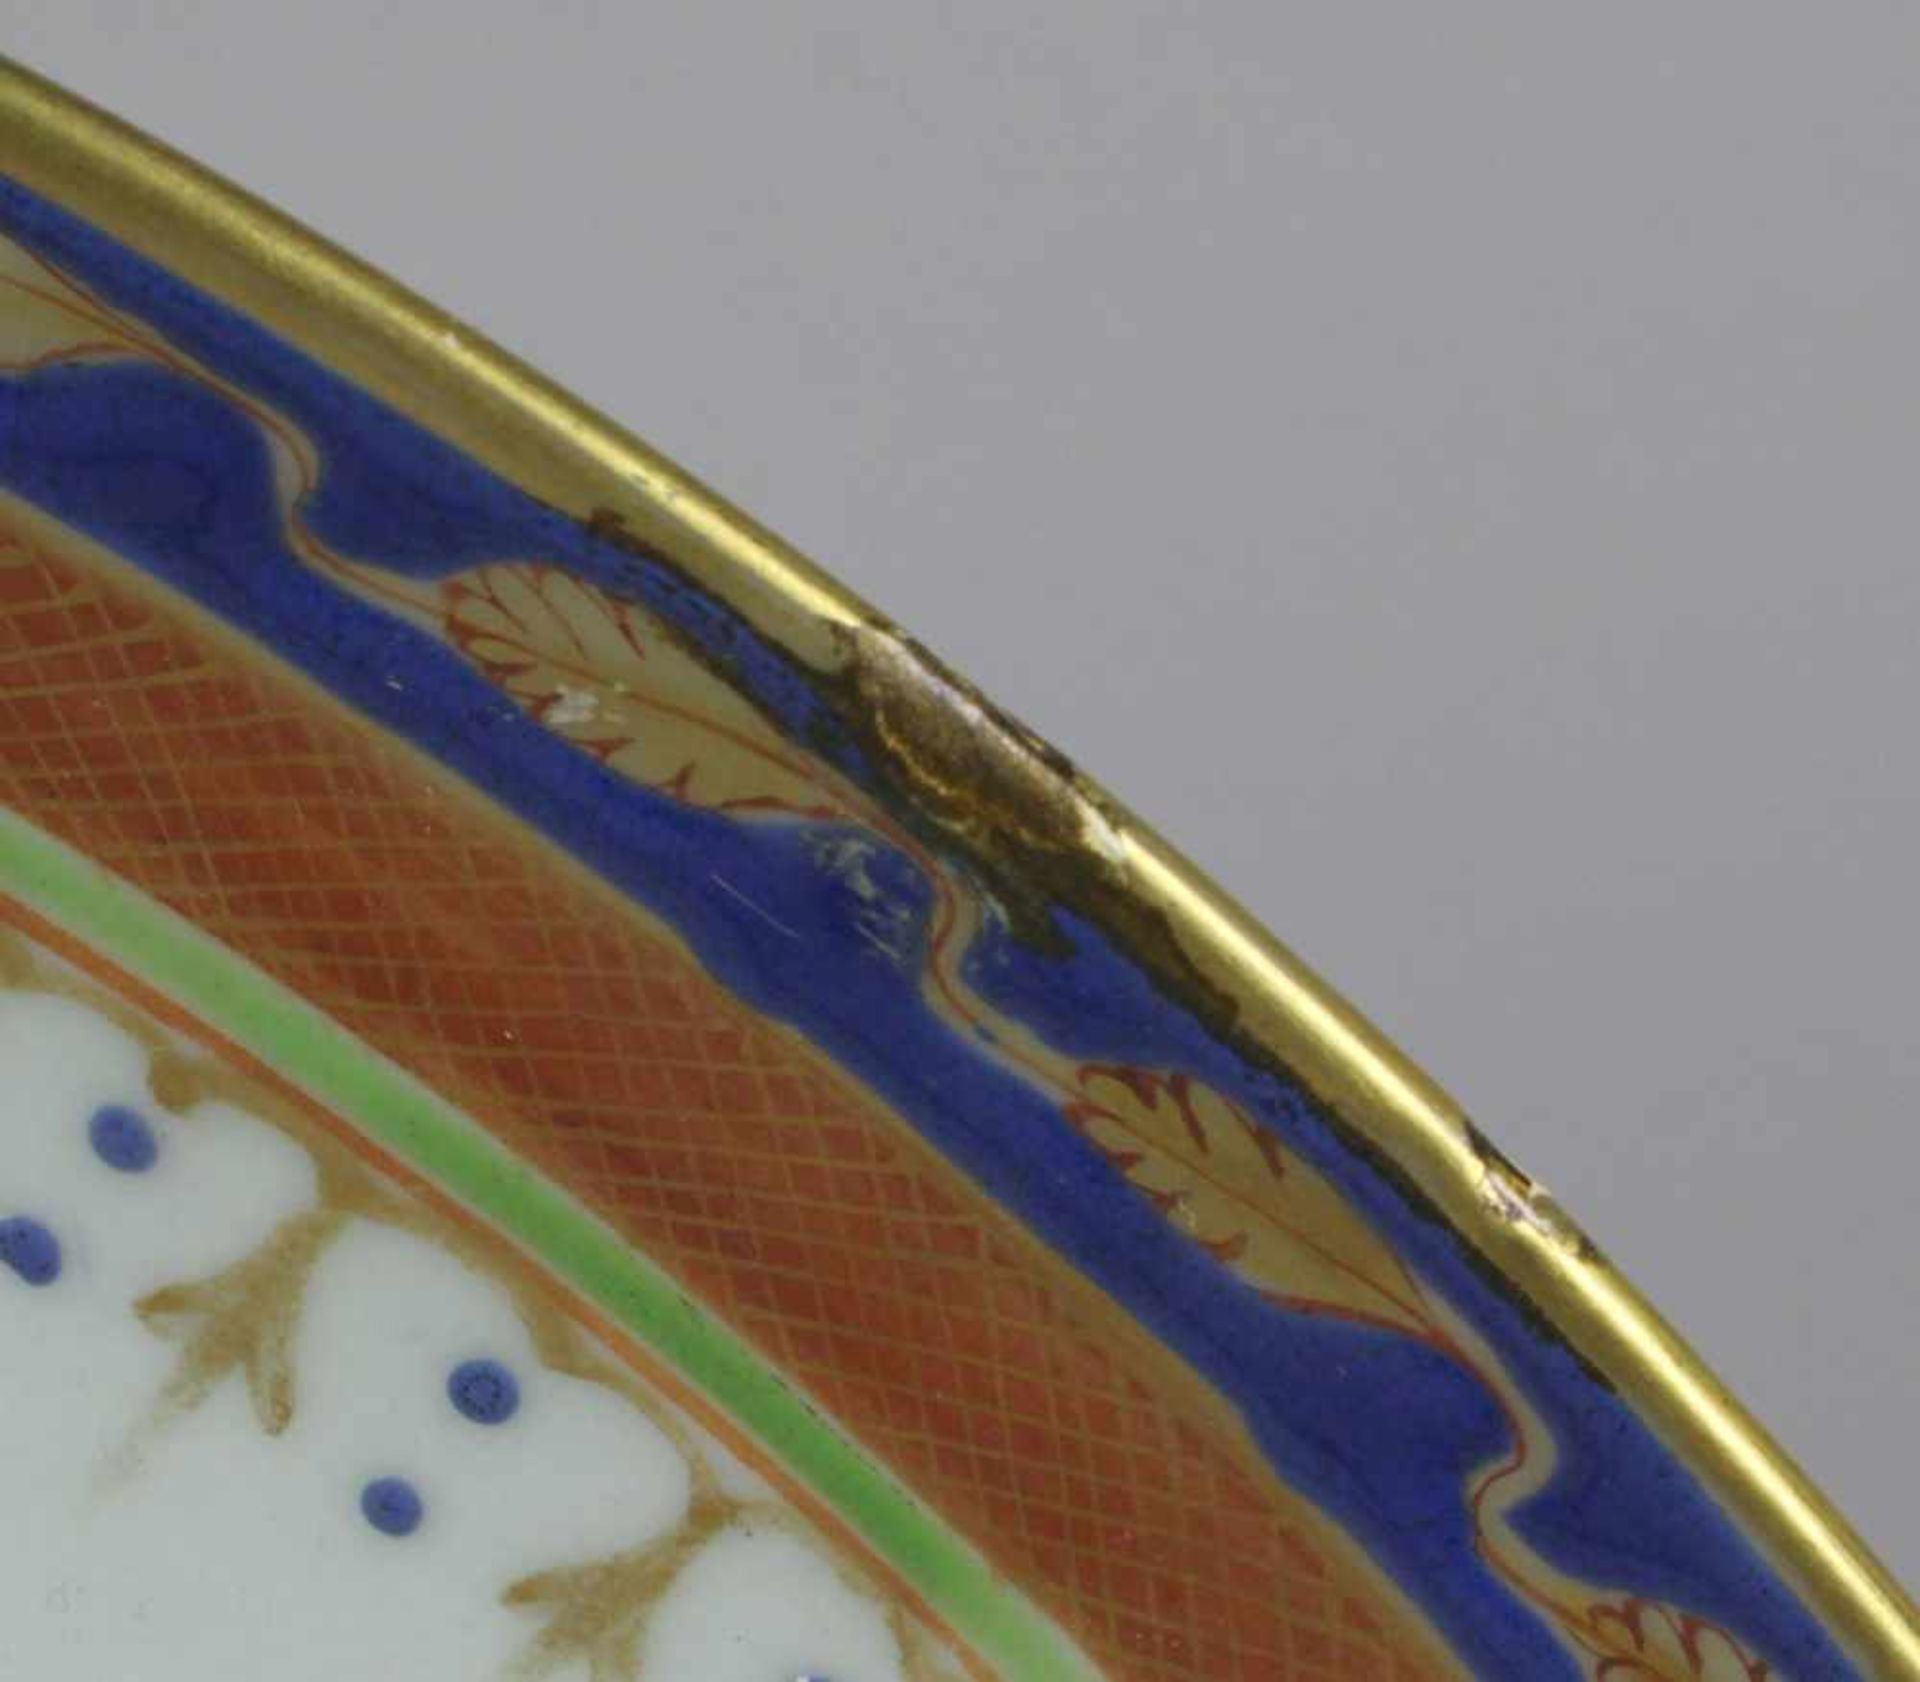 Porzellan-Zierteller, China, wohl 18. Jh., über kleinem Standring runde, gemuldete Form,< - Bild 4 aus 5